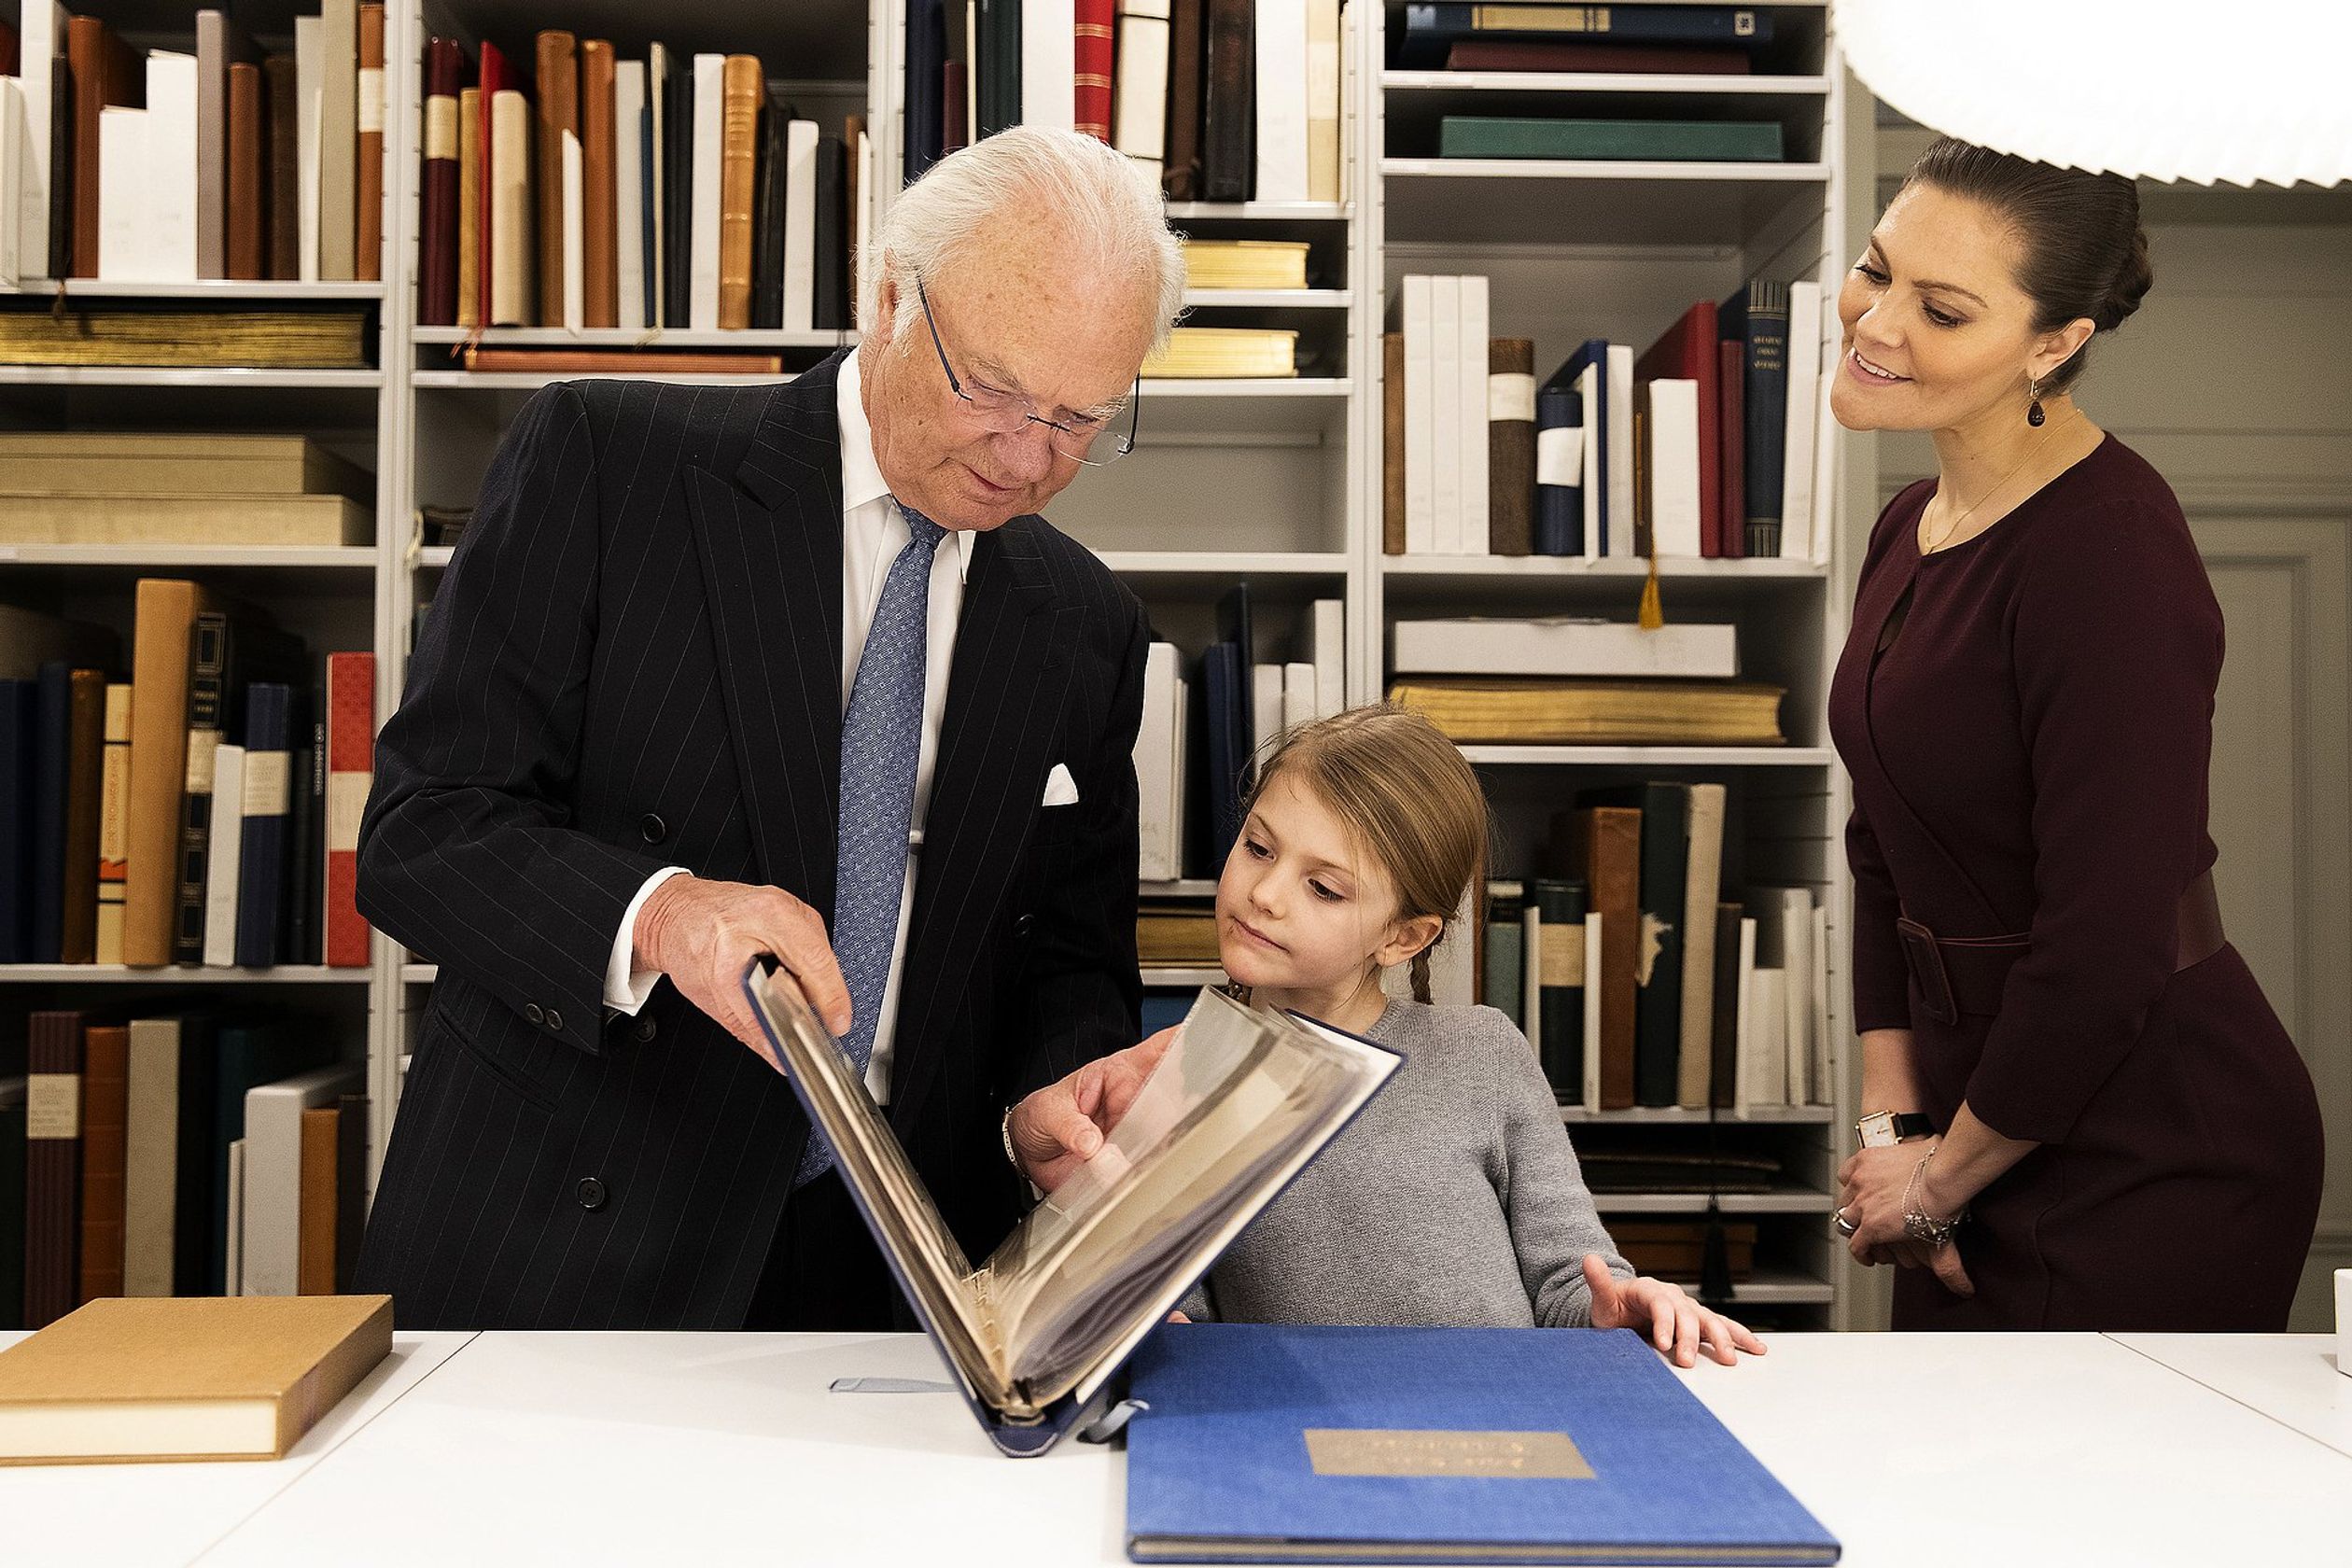 Koning_Carl_Gustaf_met_prinses_Estelle_in_Bernadottebibliotheek.jpg